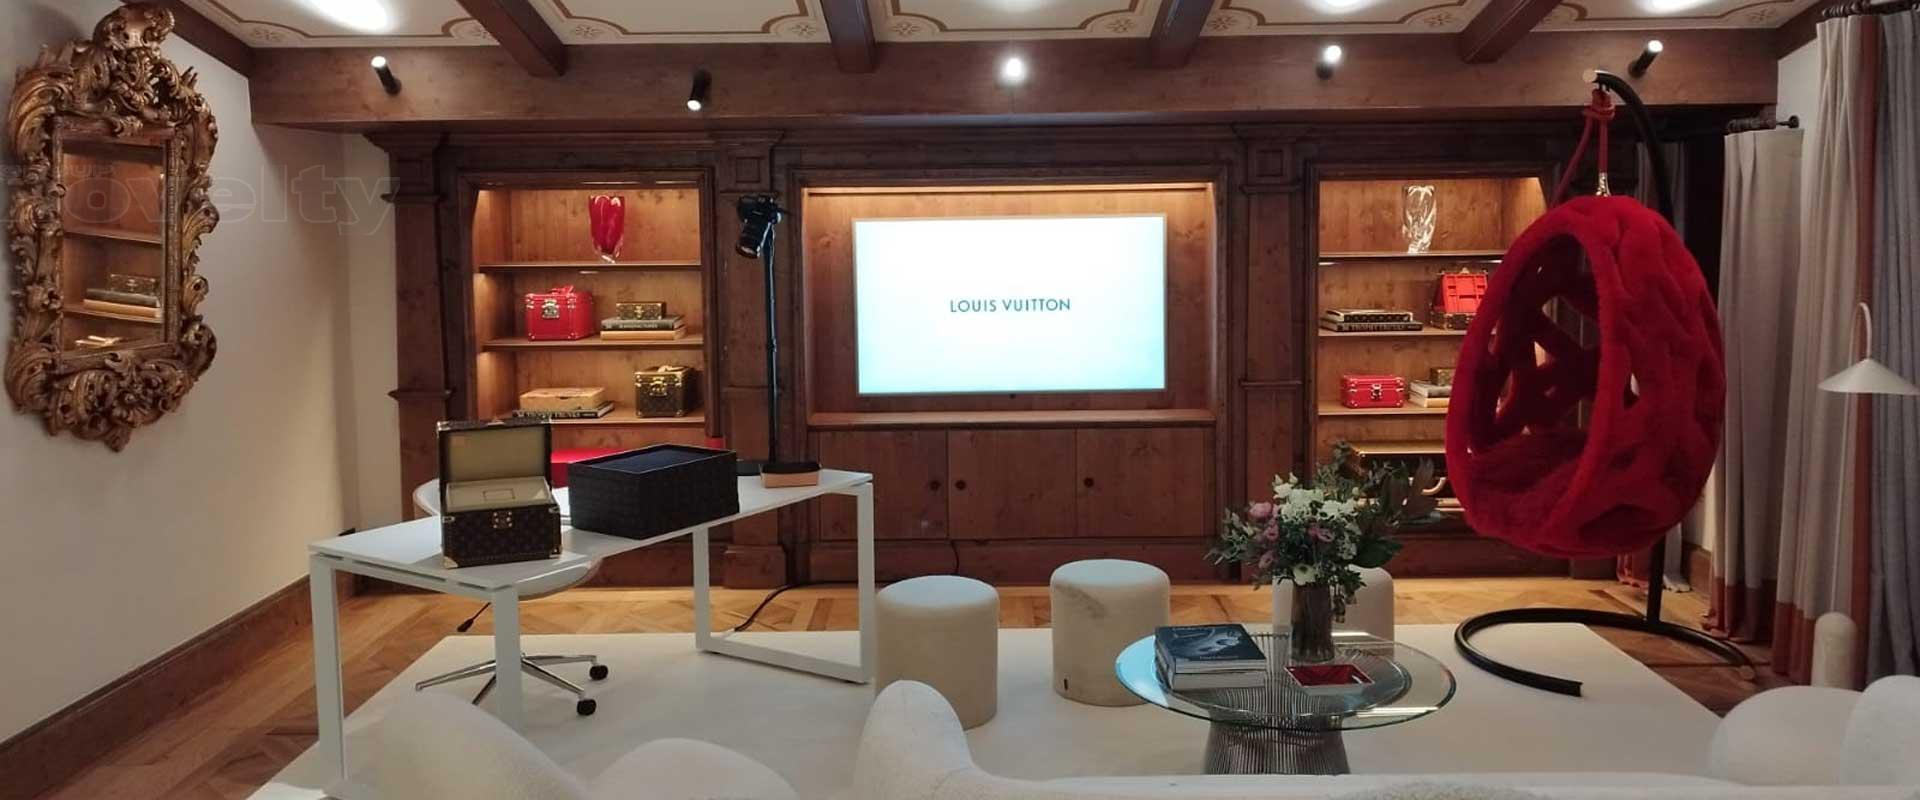 Visuel Exposition Louis Vuitton à Courchevel avec Luxury Makers